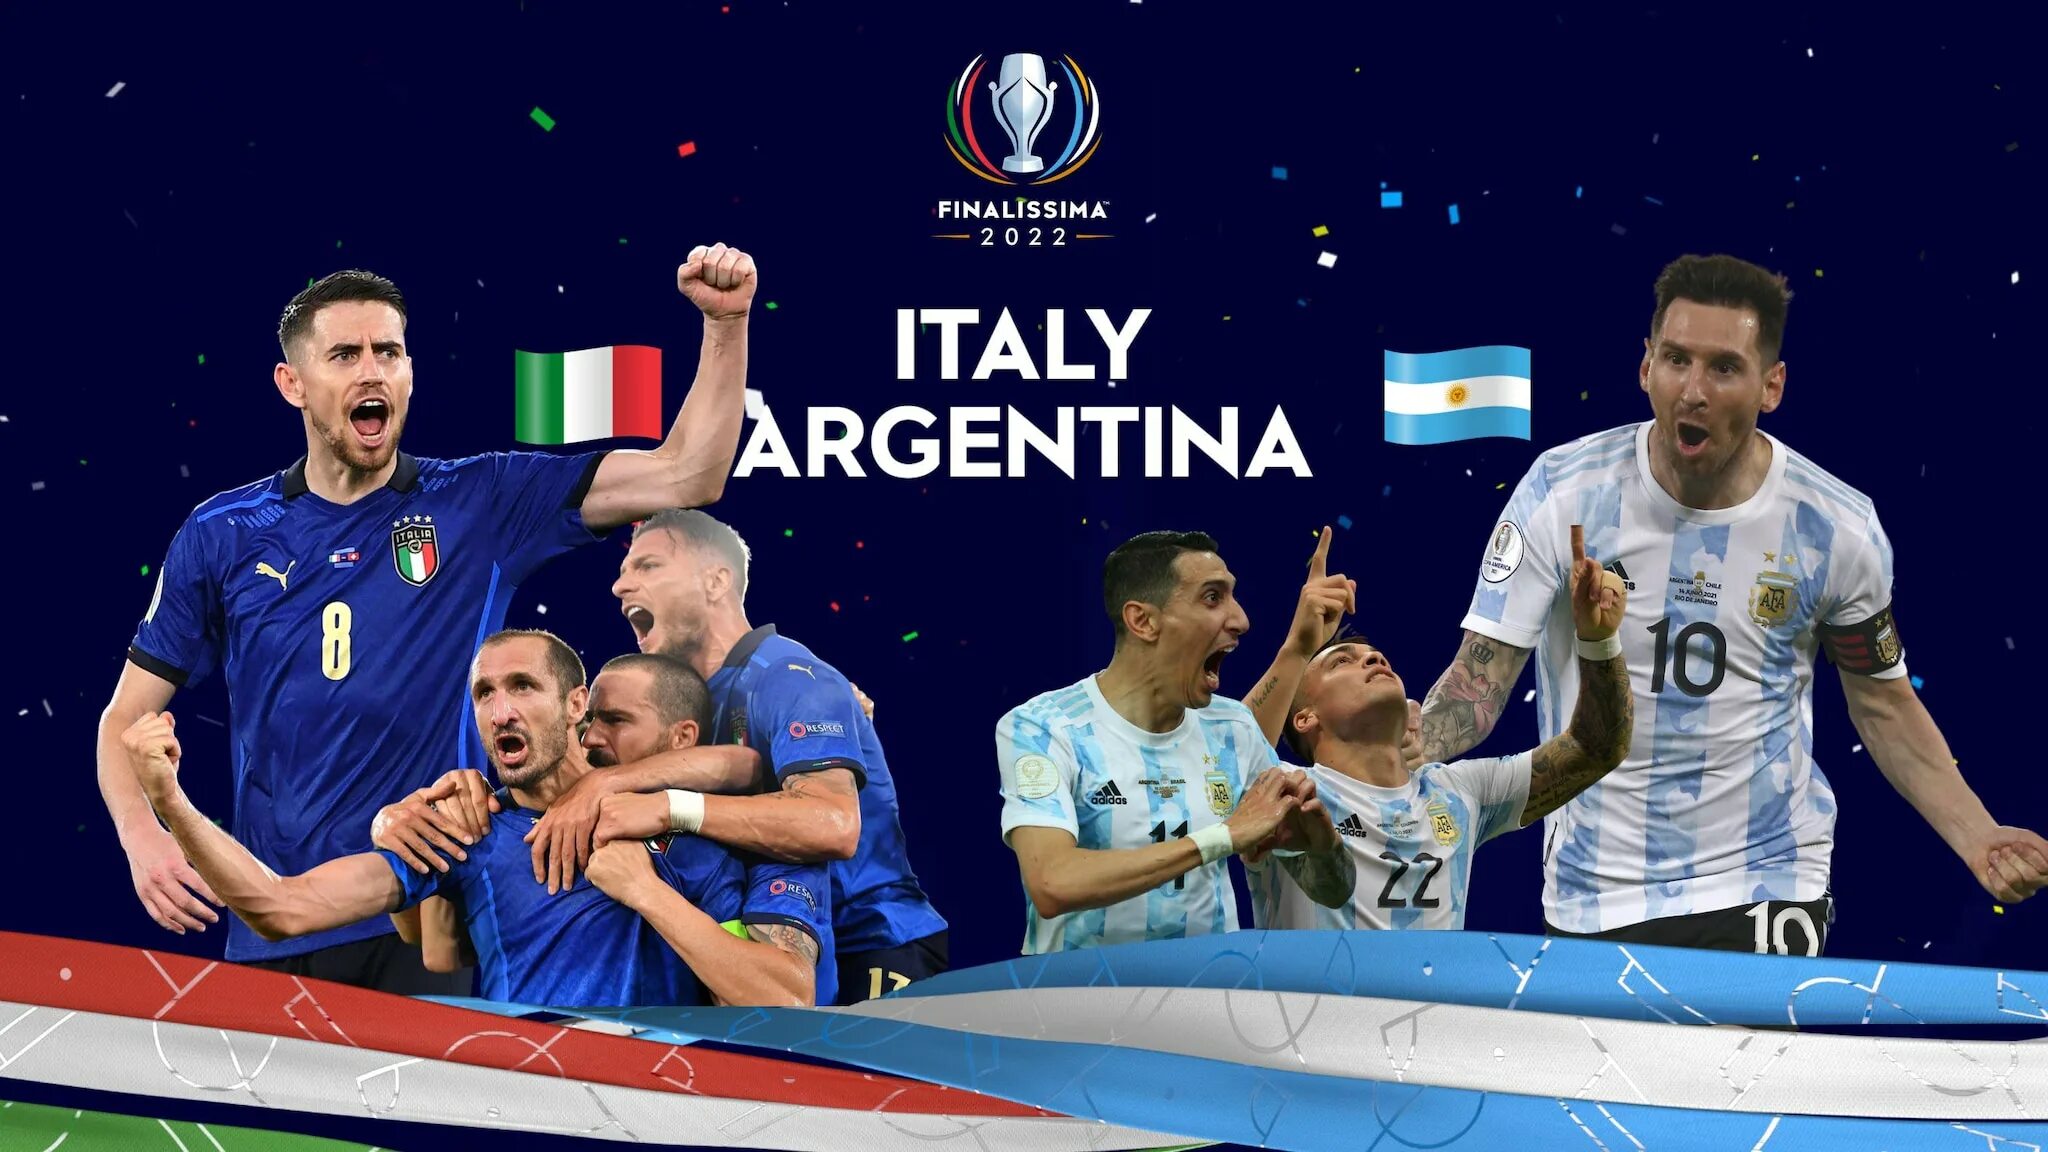 Финалиссимо Италия Аргентина 2022. Футбол финалиссима-2022. Италия Аргентина 1 июня 2022. Финалисима футбол 2022 Италия Аргентина. 1 2 июня 2018